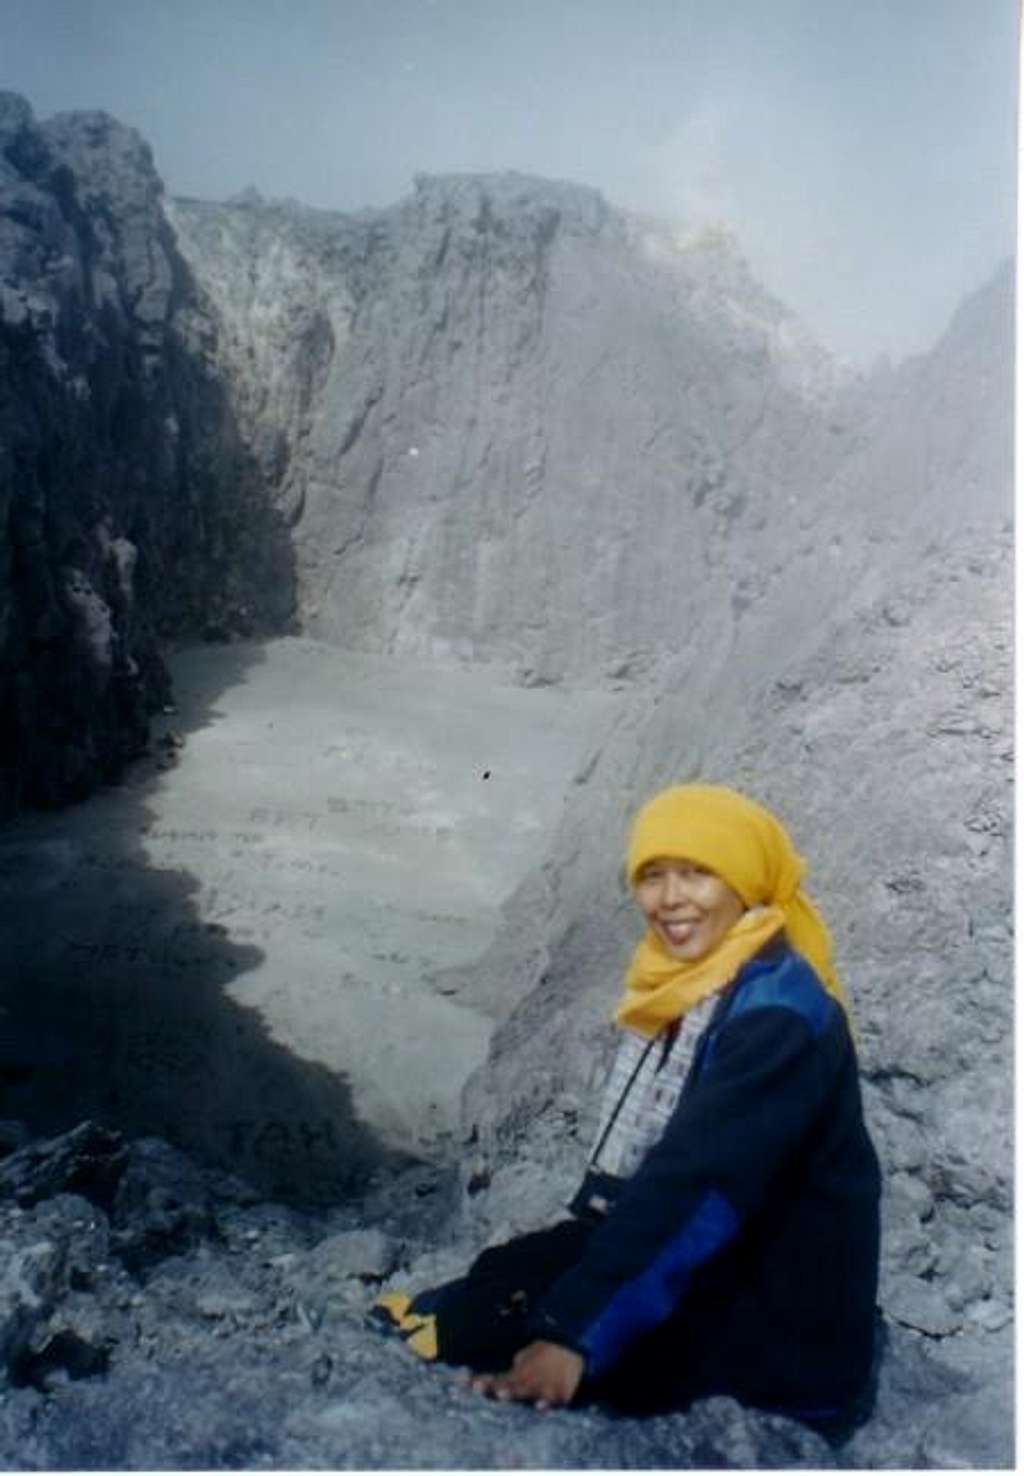 Mt Merapi craters